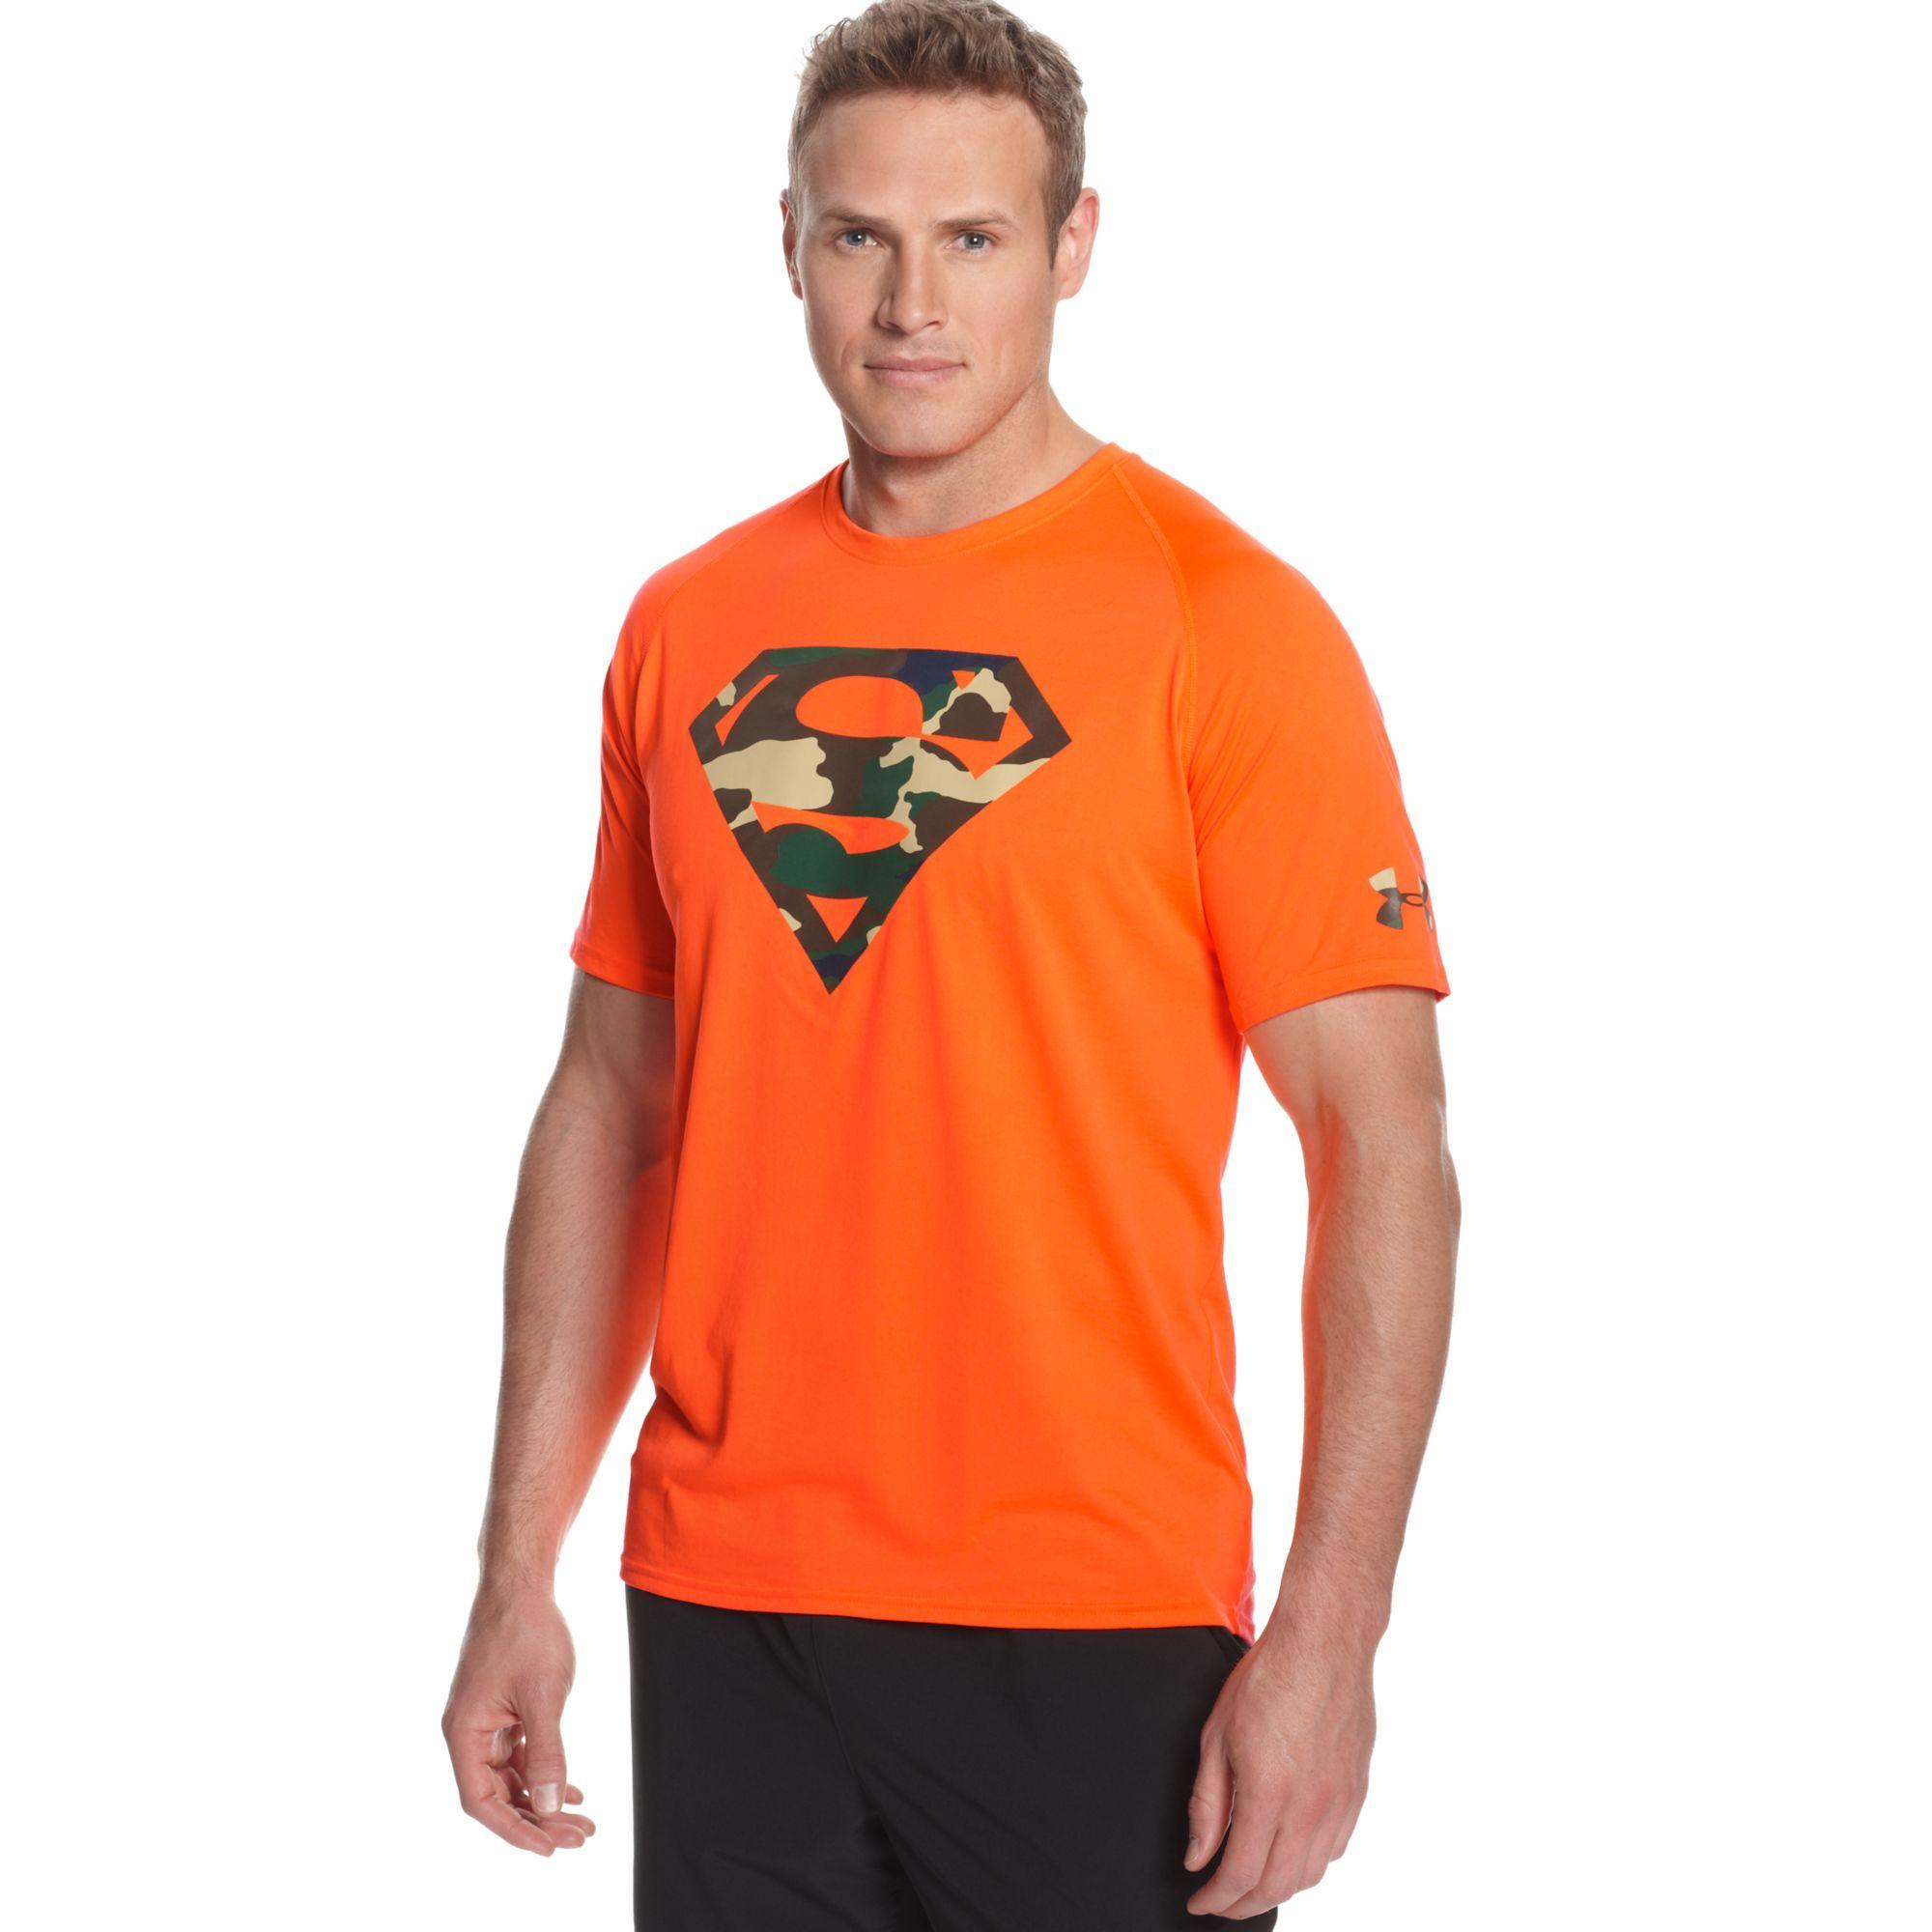 Orange Under Armour Camo Logo - Lyst - Under Armour Under Amrour Alter Ego Camouflage Superman ...